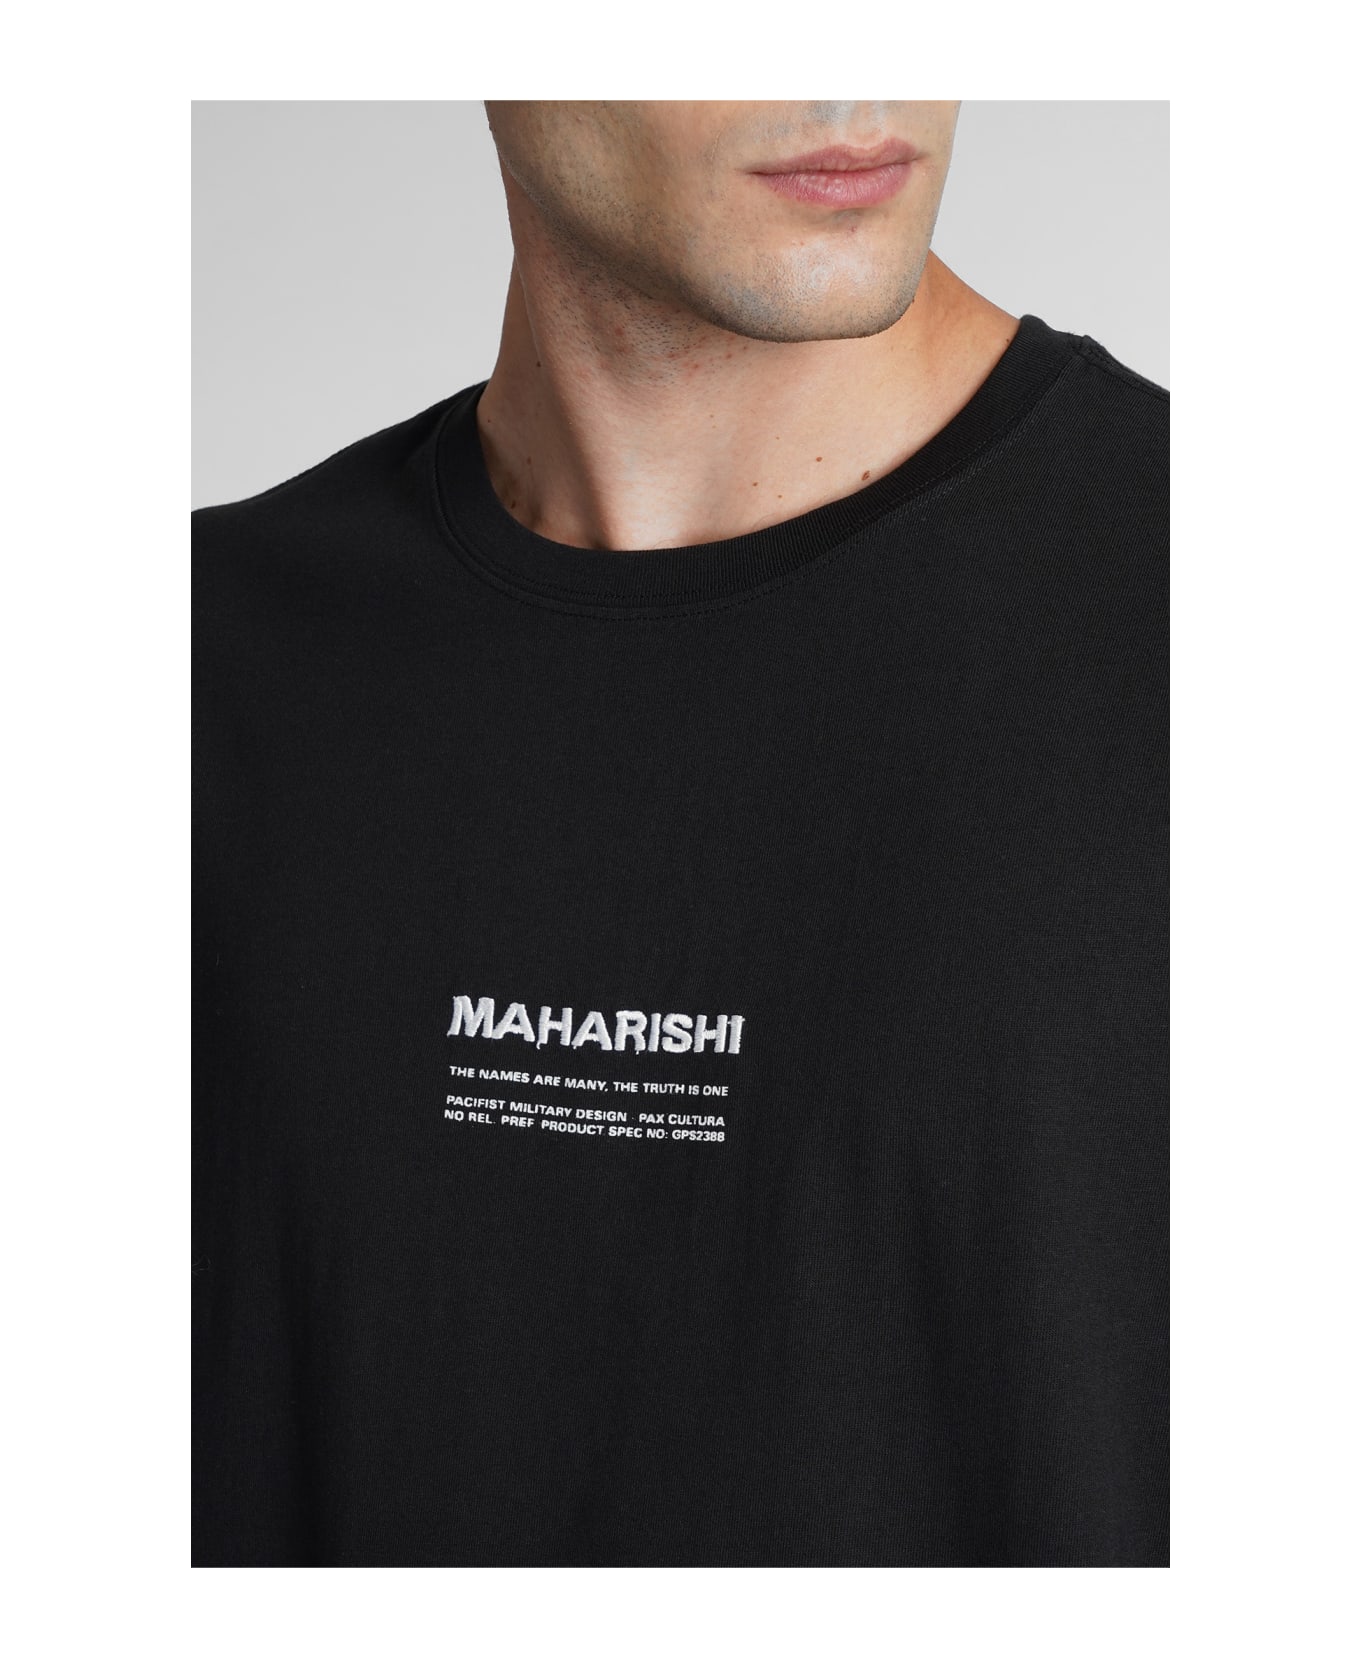 Maharishi T-shirt In Black Cotton - black シャツ